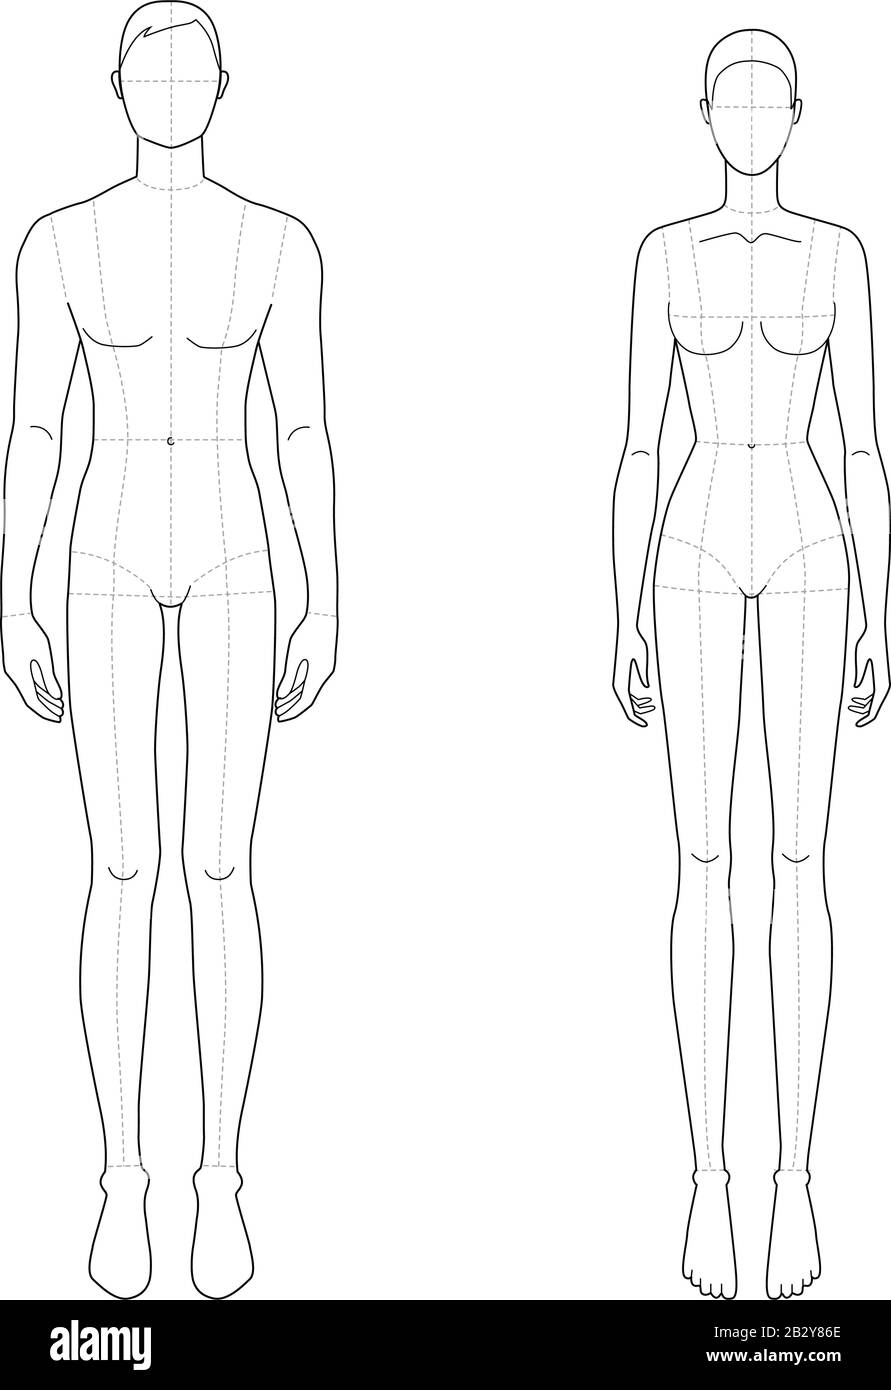 Modèle de mode des hommes et des femmes debout. 9 dimensions de tête pour  le dessin technique avec lignes principales. Messieurs figure vue de face.  Silhouette vectorielle pour l'esquisse et l'illustration de